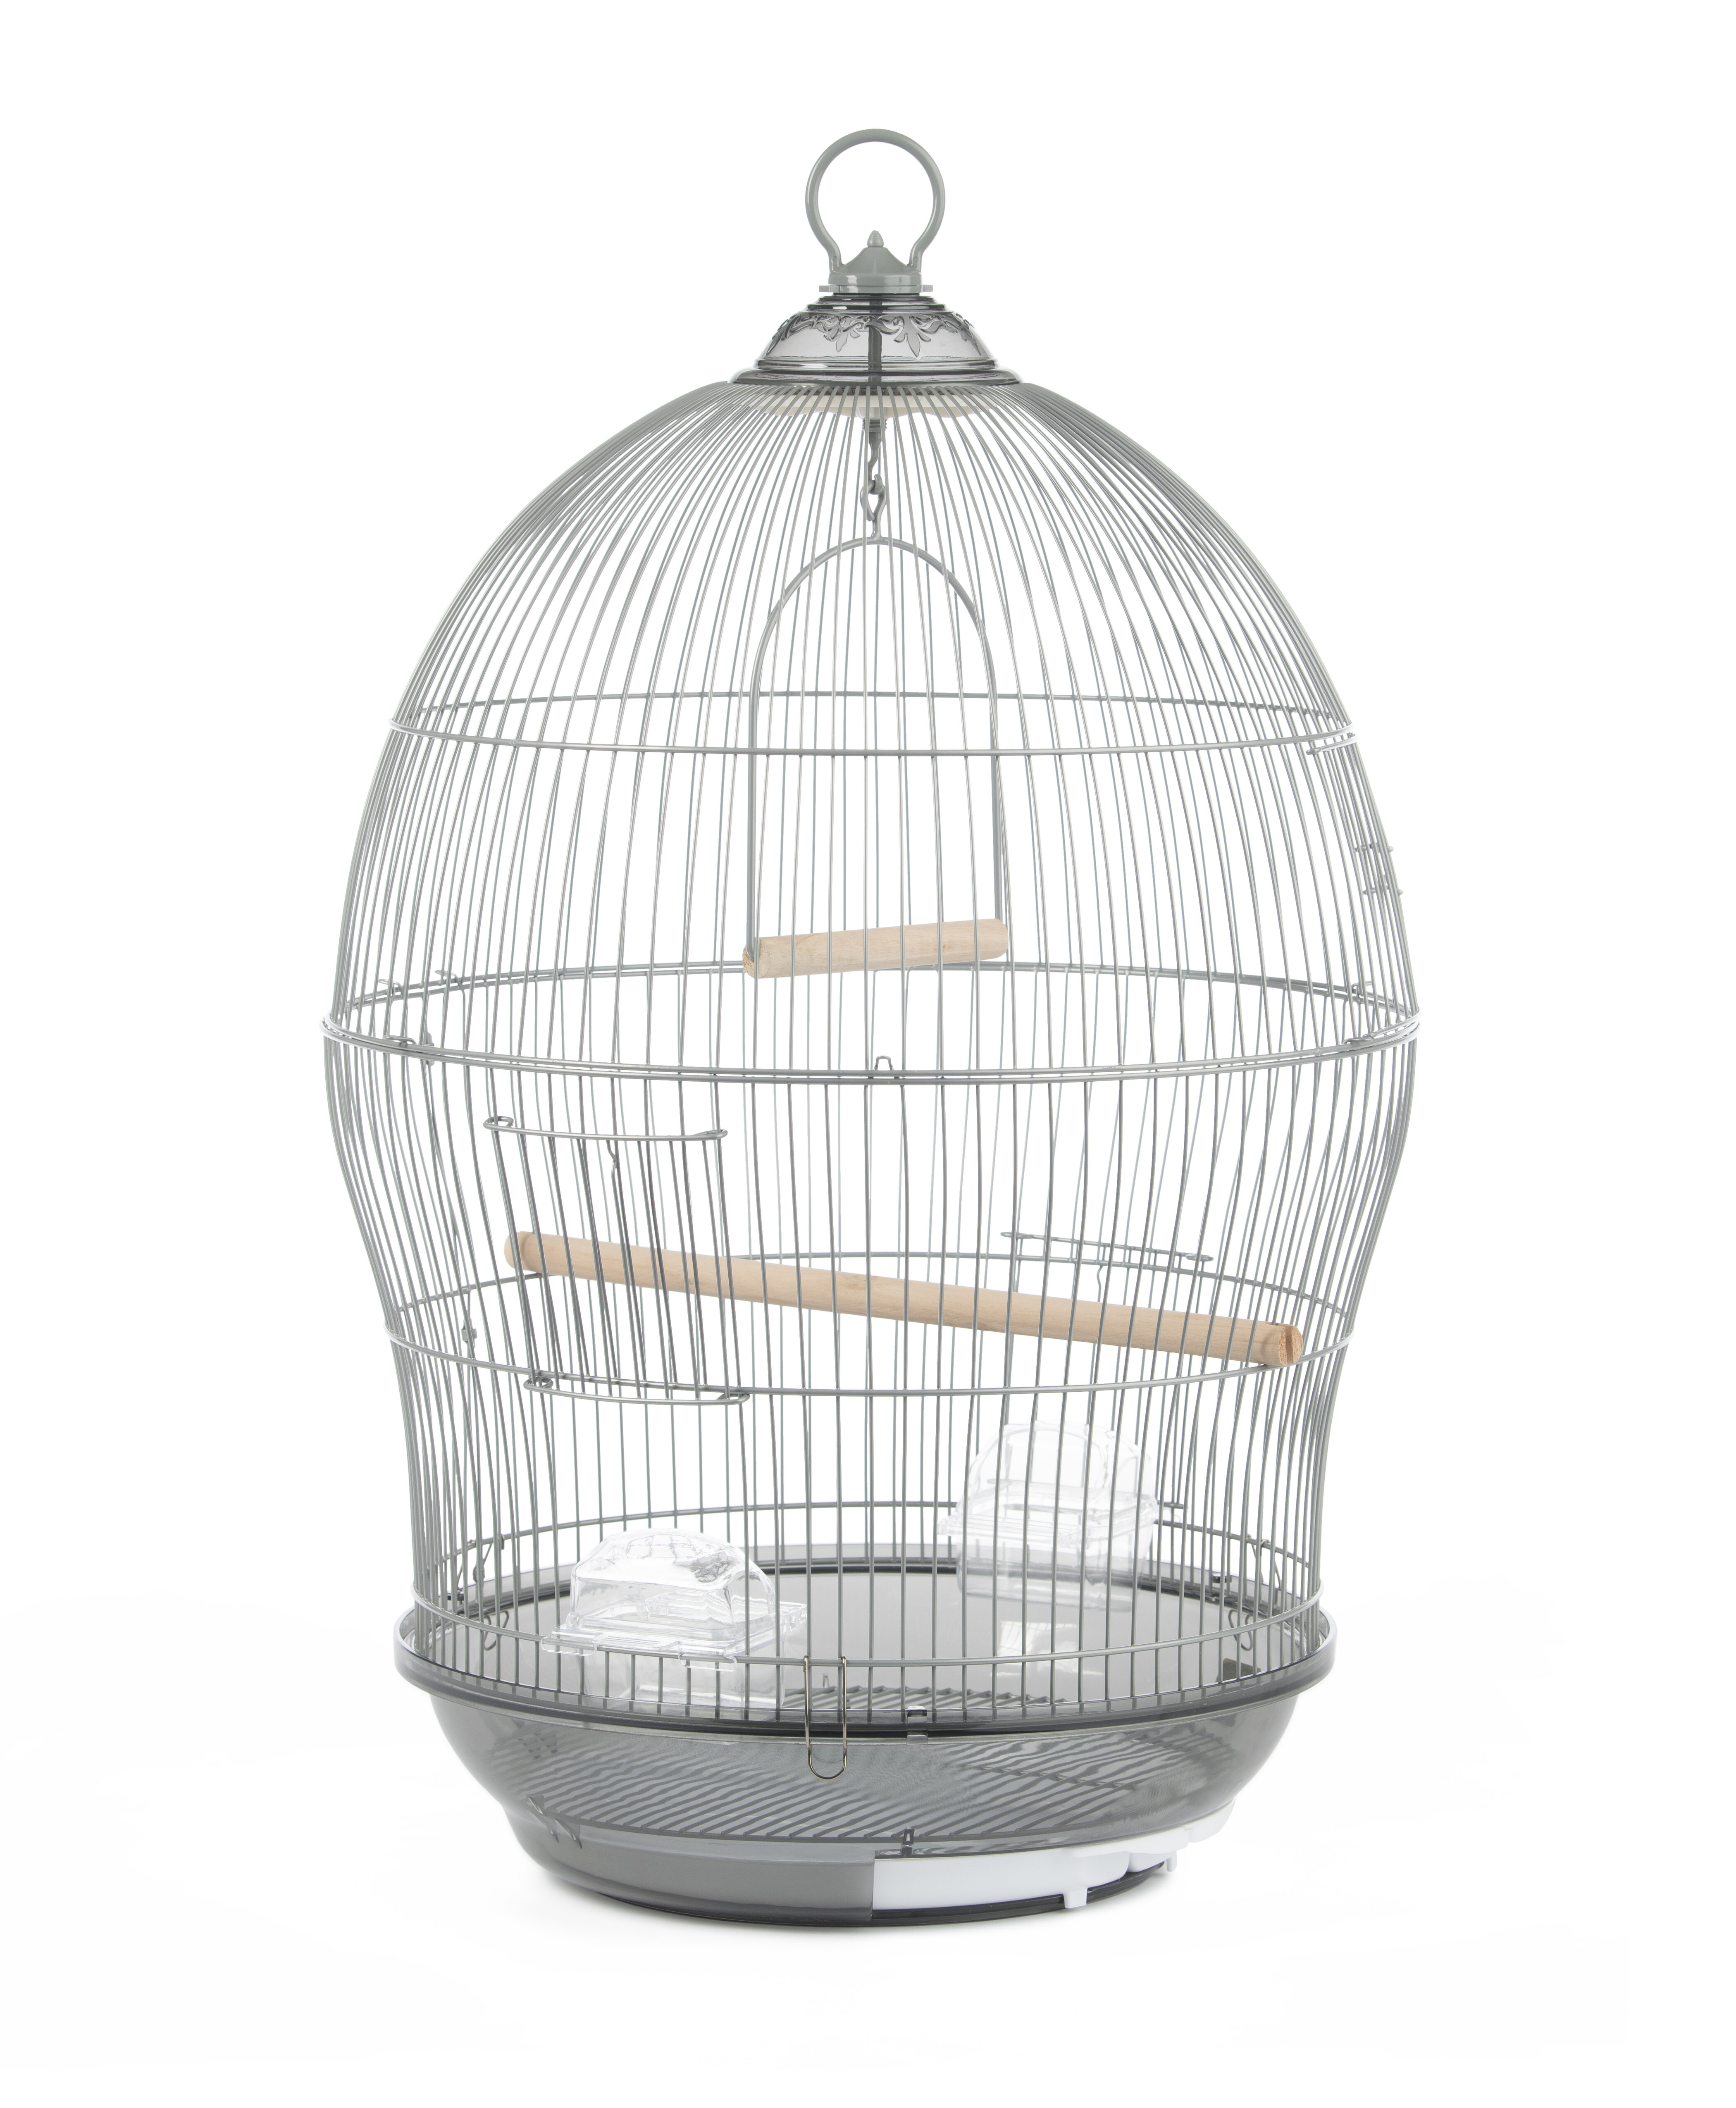 Tucker Murphy Pet™ Bressler 25 Steel Victorian Top Hanging Bird Cage with  Perch & Reviews - Wayfair Canada